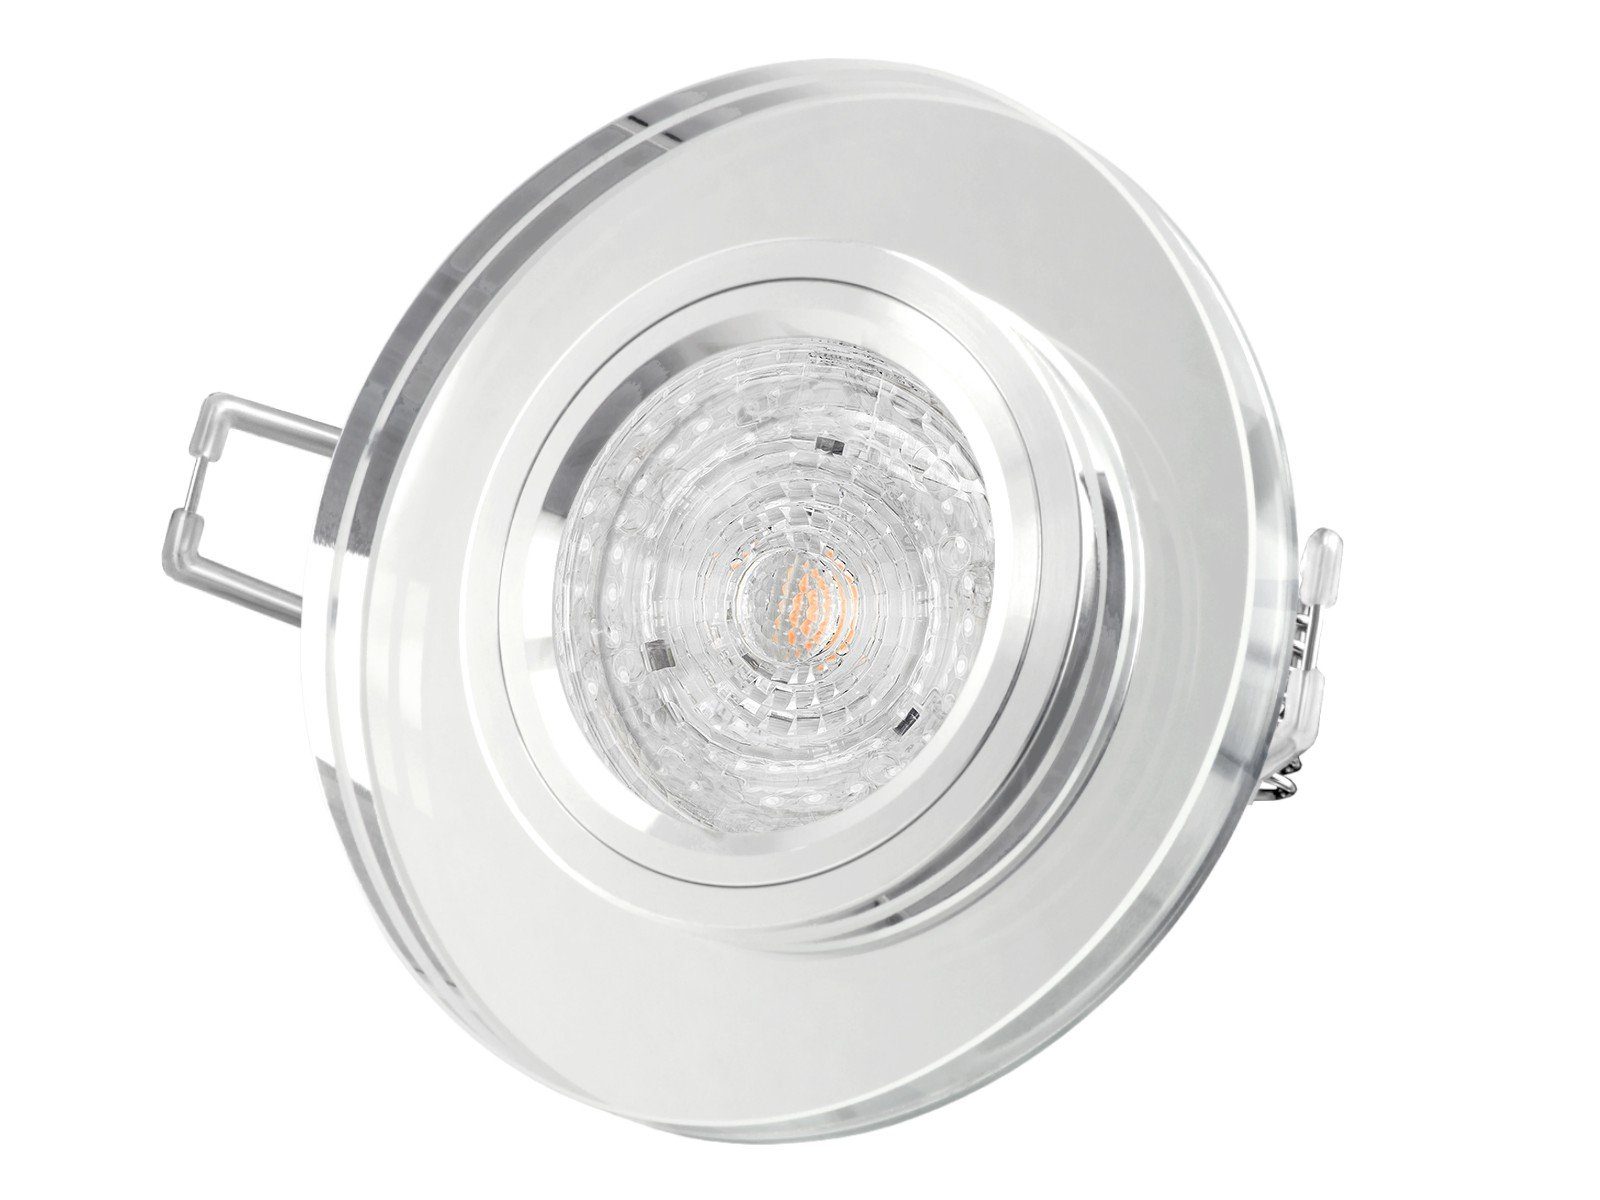 SSC-LUXon LED Einbaustrahler Dimmbarer LED-Einbaustrahler klar Neutralweiß rund, spiegelnd, Echtglas 4,9W